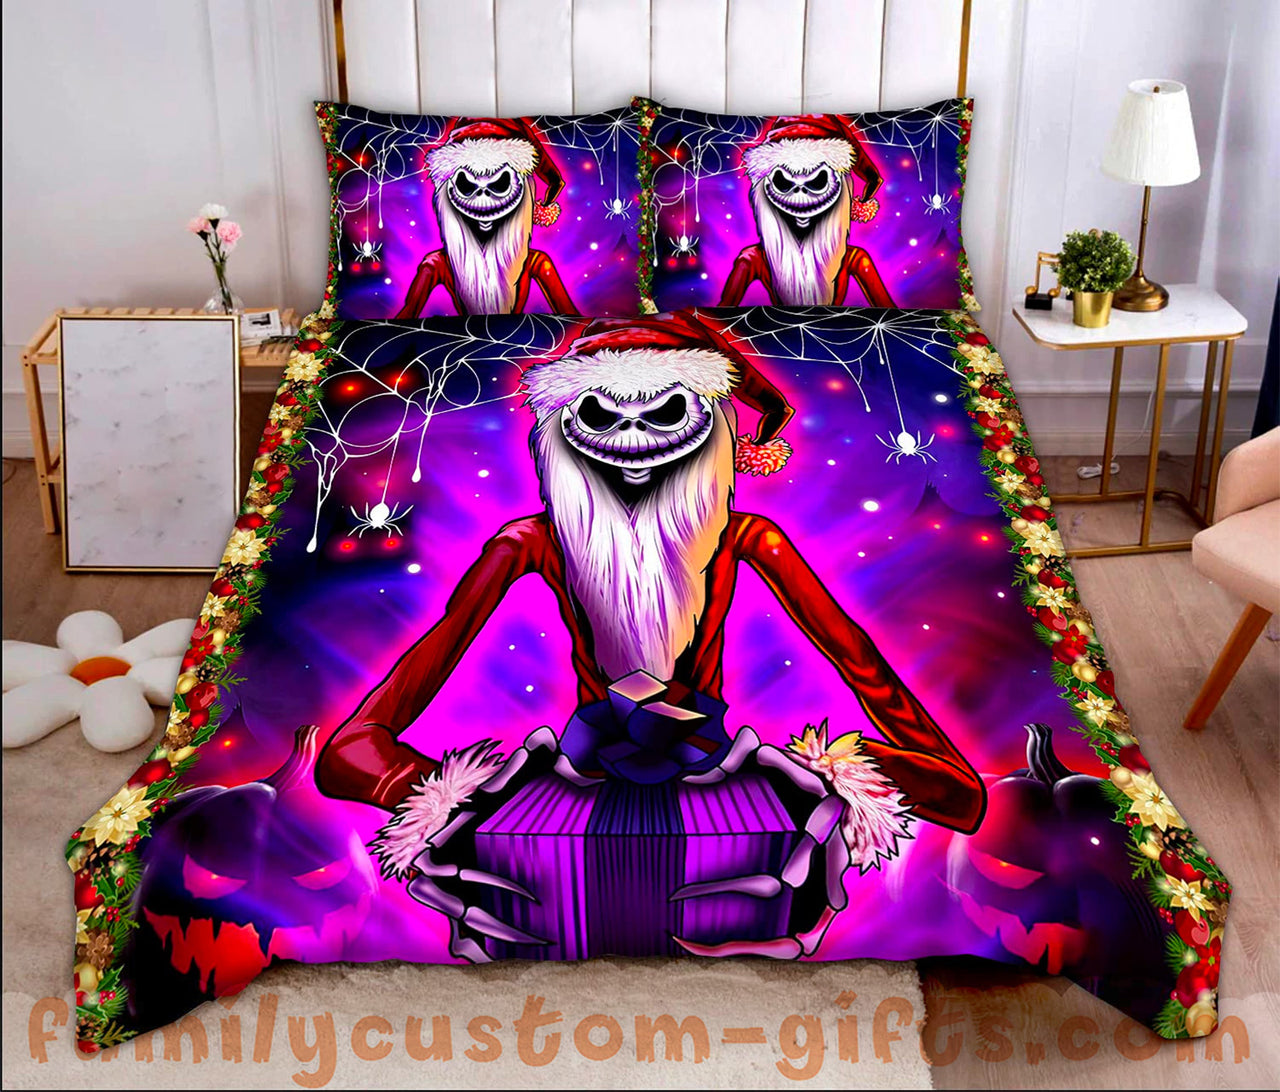 Custom Quilt Sets Nightmare Before Christmas Premium Quilt Bedding for Boys Girls Men Women